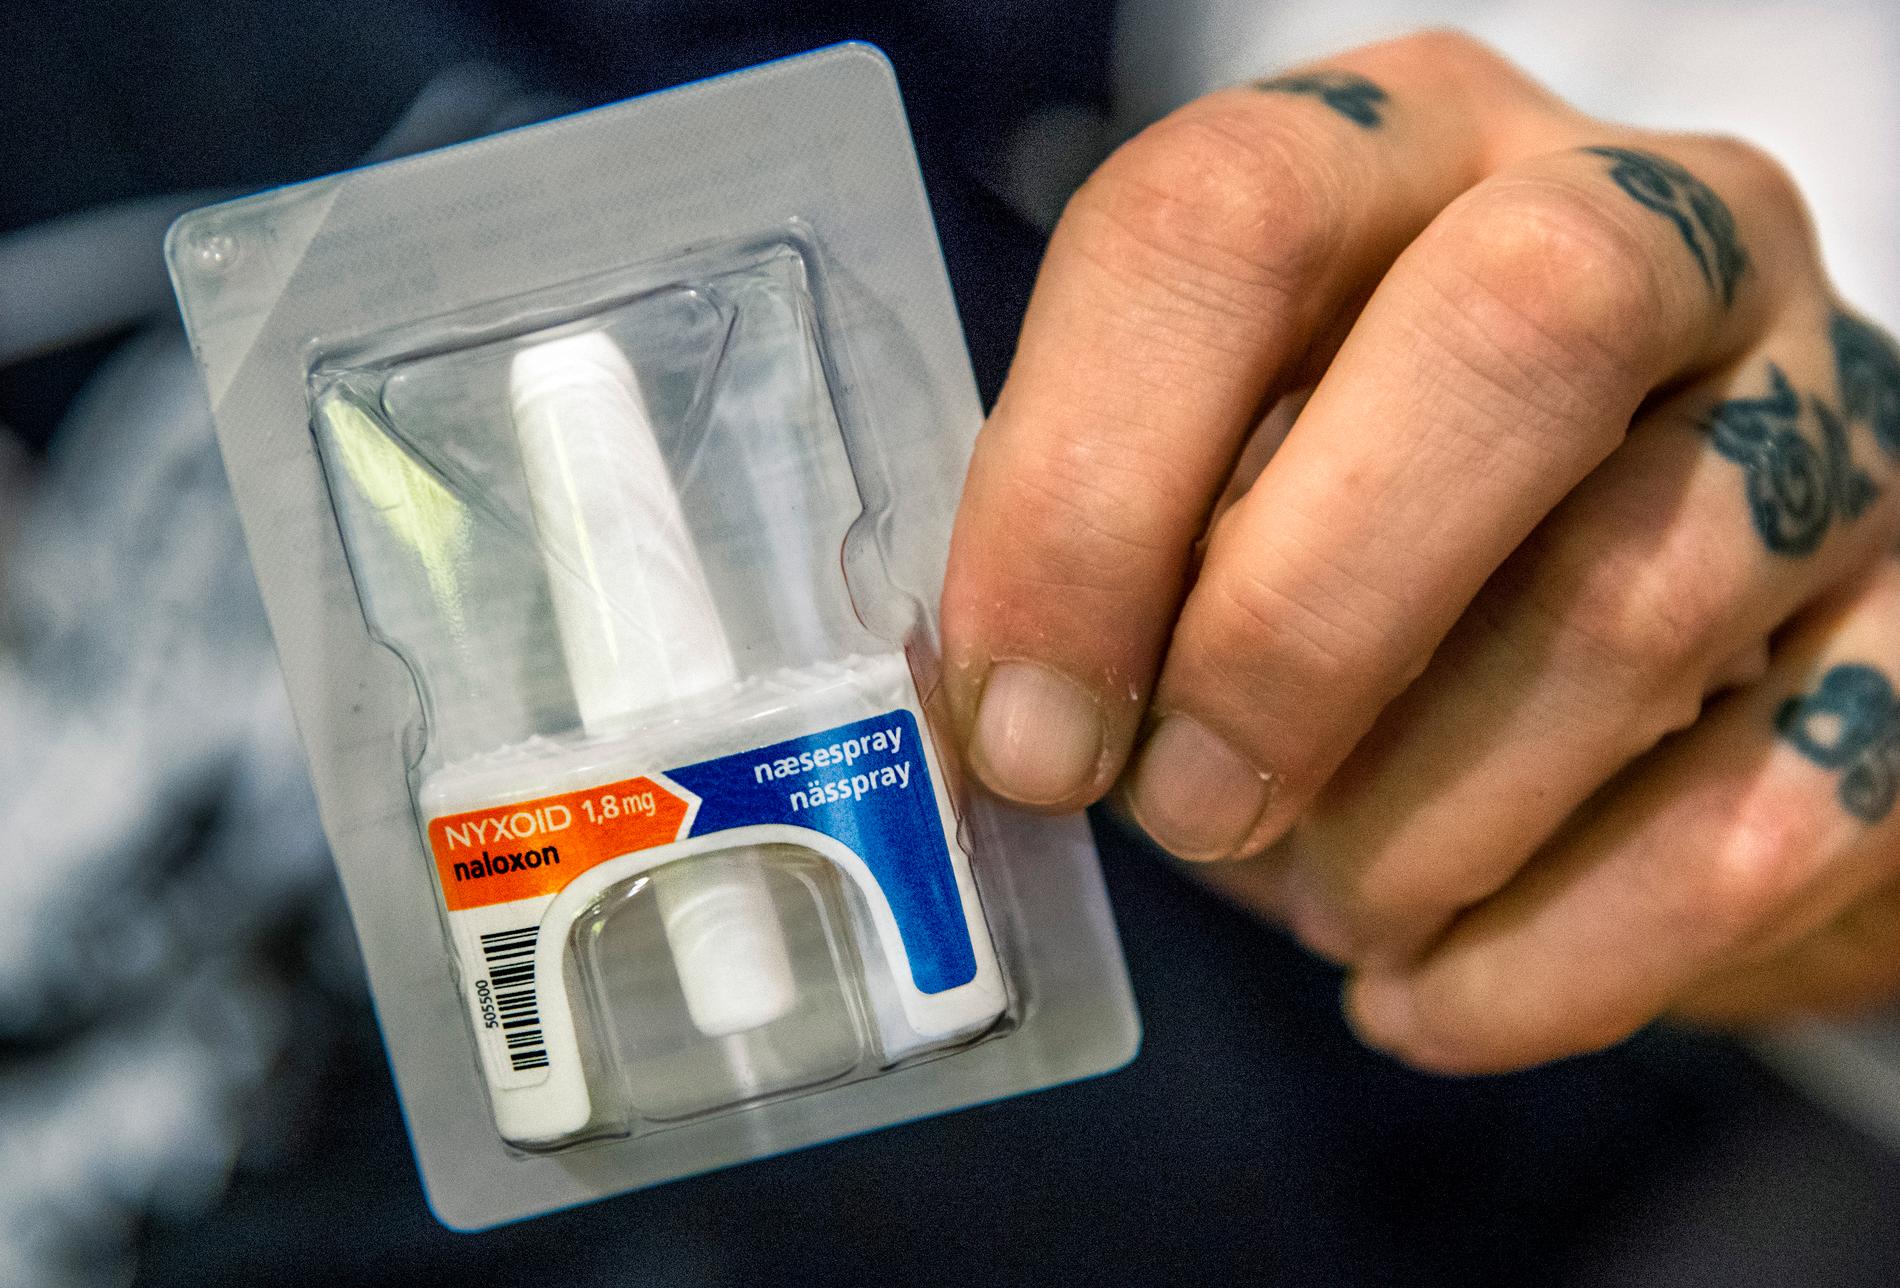 Motgiftet naloxon i form av nässprej, som kan häva dödliga överdoser hos narkotikamissbrukare.